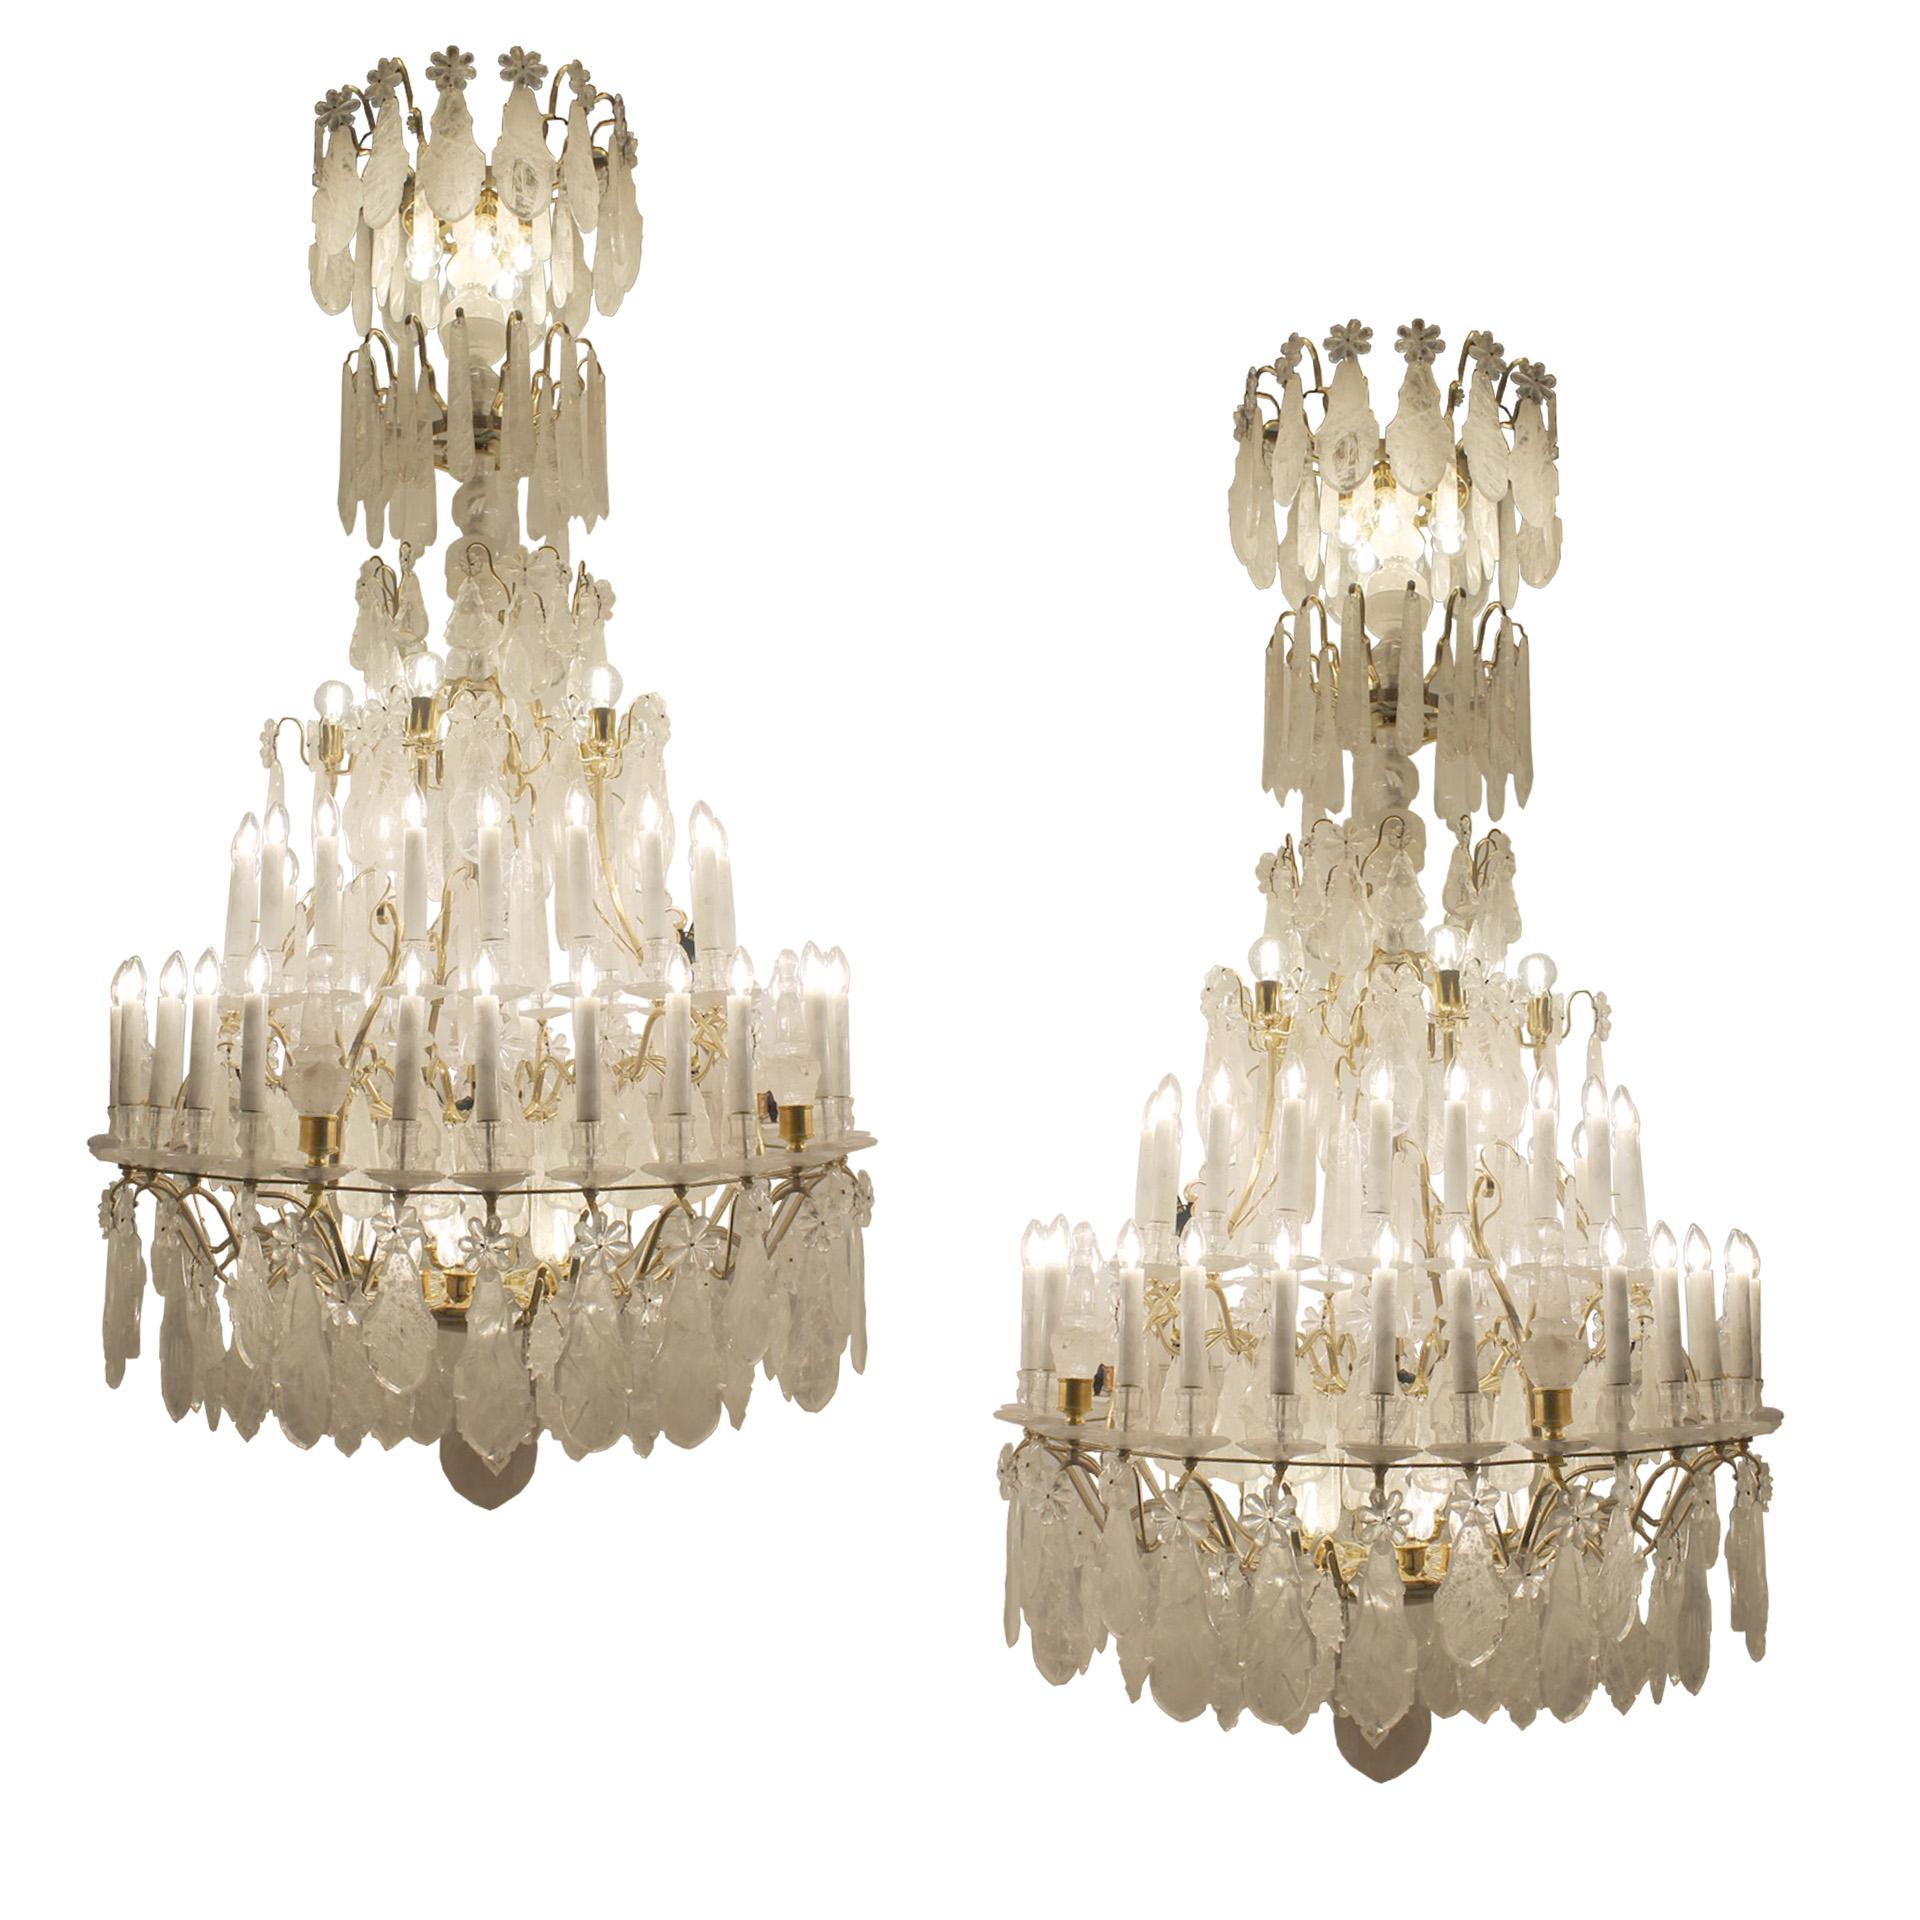 Ein außergewöhnliches Paar Bergkristall-Kronleuchter im klassischen Louis-XV-Stil mit den ungewöhnlichen Abmessungen von 2,4 m Höhe und 1,2 m Durchmesser. Jeder Kronleuchter besteht aus 45 Hauptlampen und 16 Pygmäenbirnen. Alle Stücke sind aus